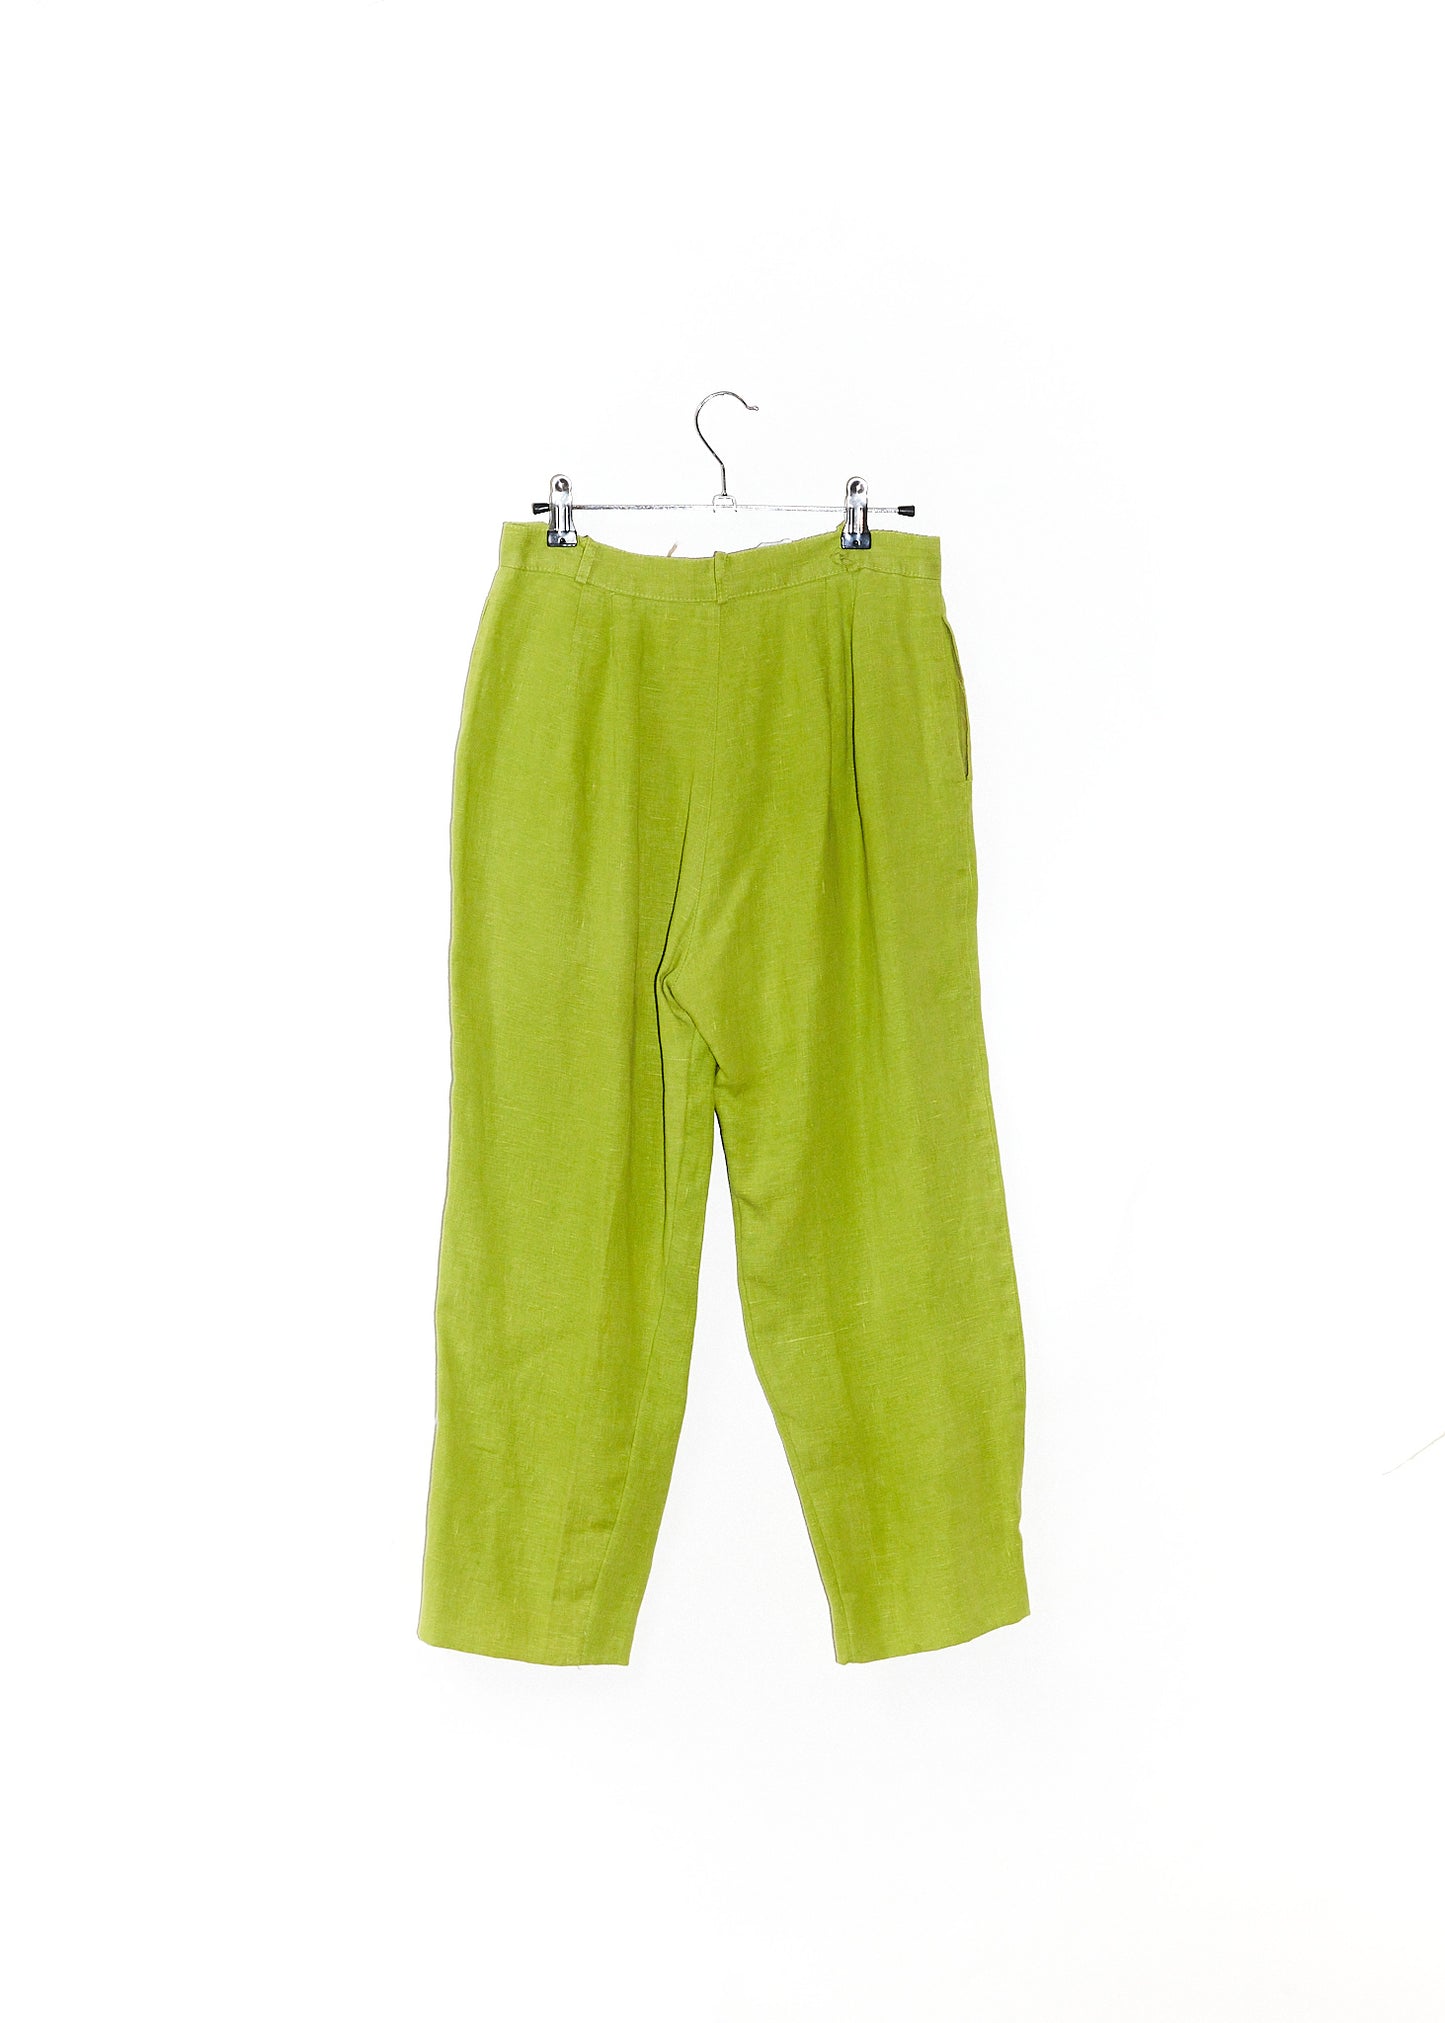 Lime Green Cotton Pants